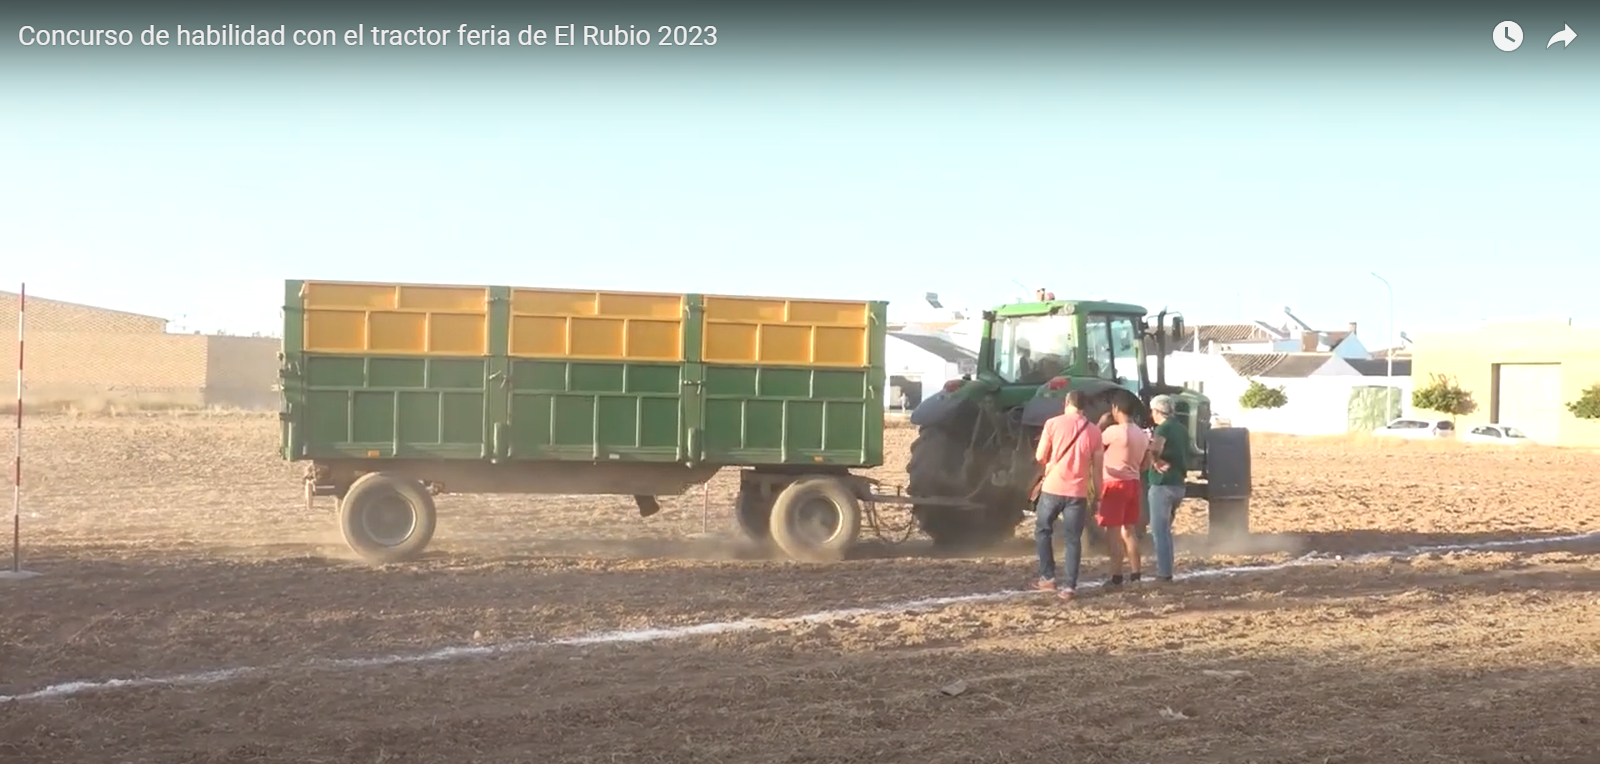 Concurso de habilidad con el tractor feria de El Rubio 2023